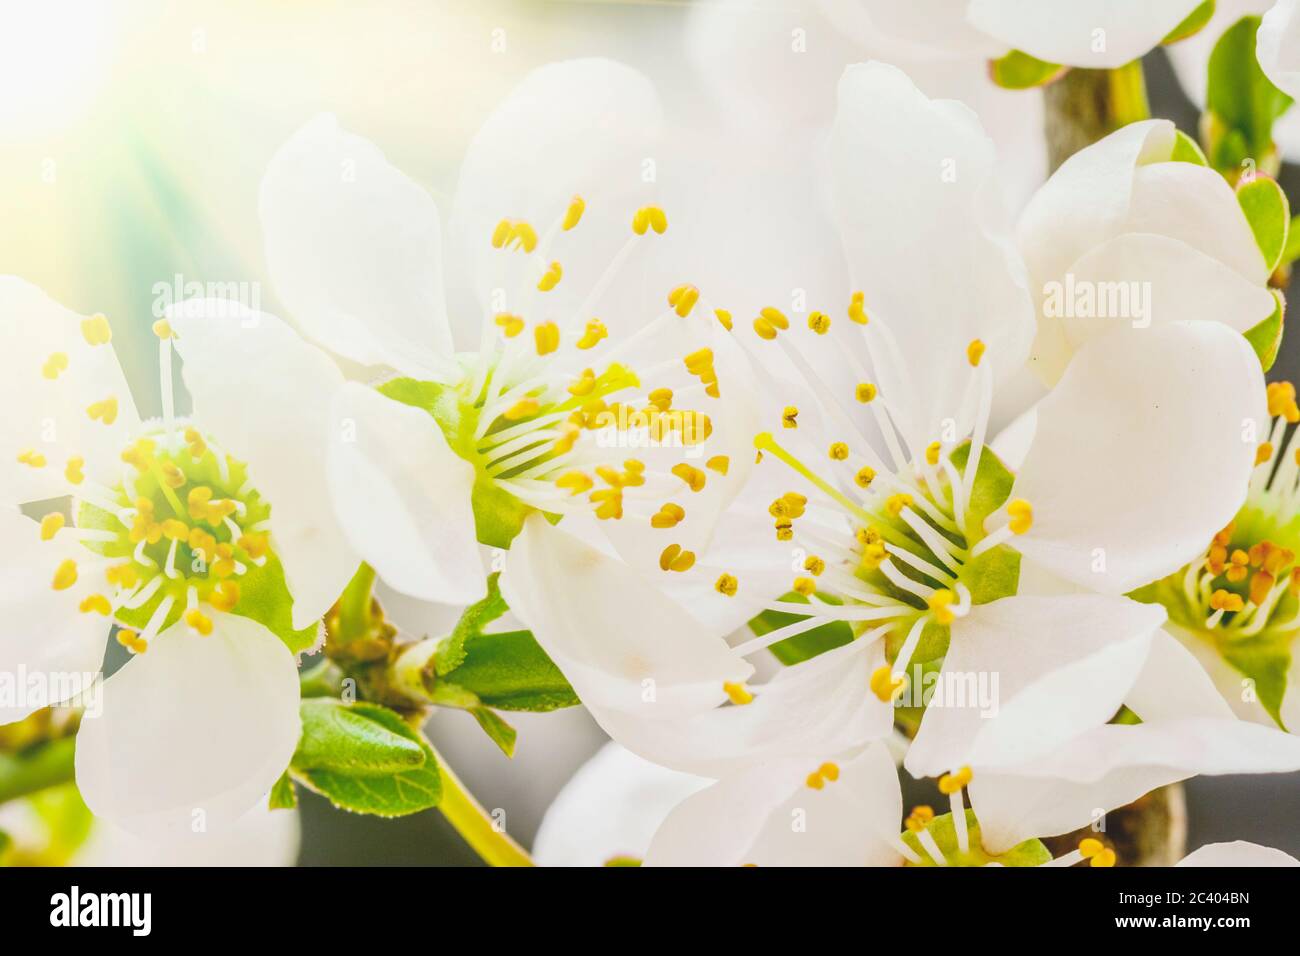 Kirsche Frucht Baum Blume Blüte auf einem floral background, makroaufnahme. Stockfoto